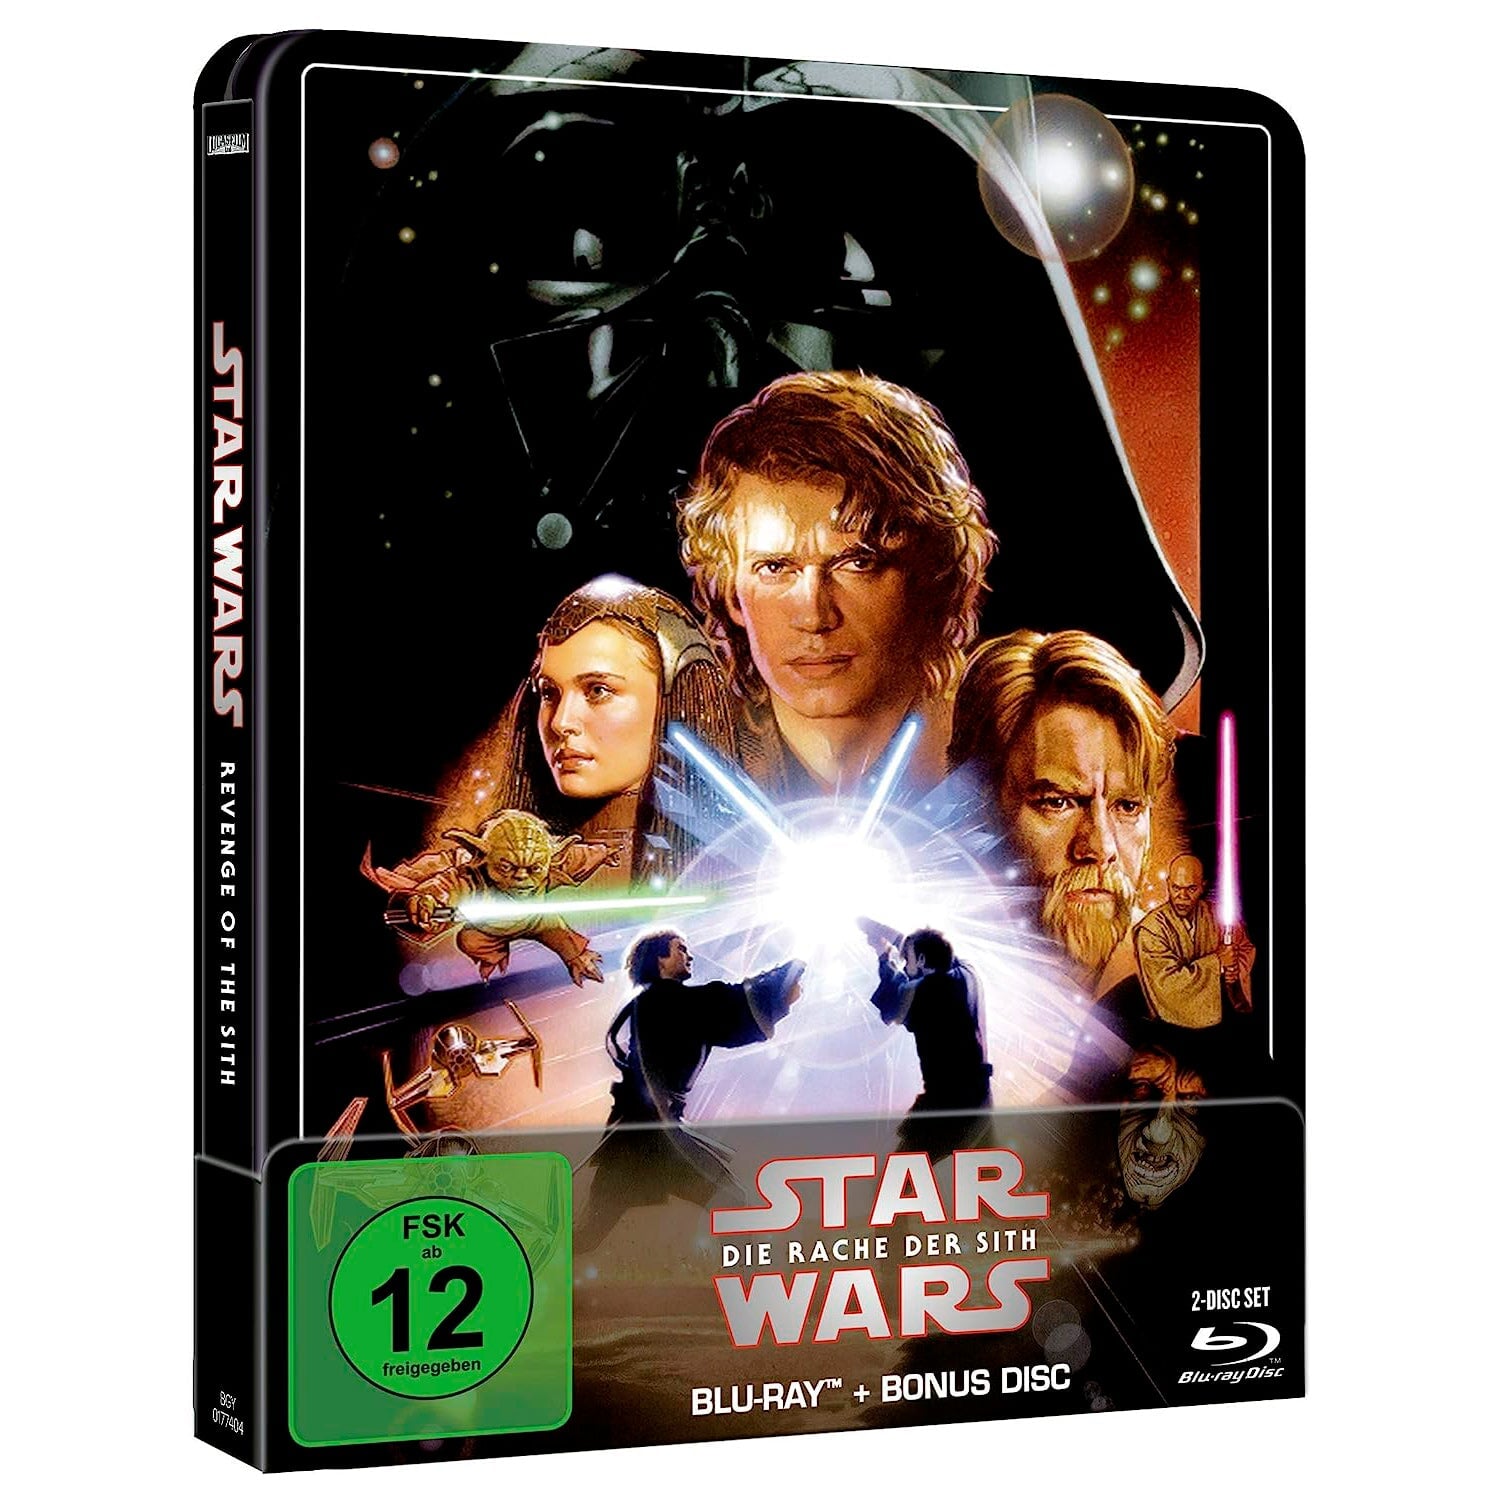 Звёздные войны: Эпизод III – Месть Ситхов (англ. язык) (Blu-ray + Бонусный диск) Steelbook